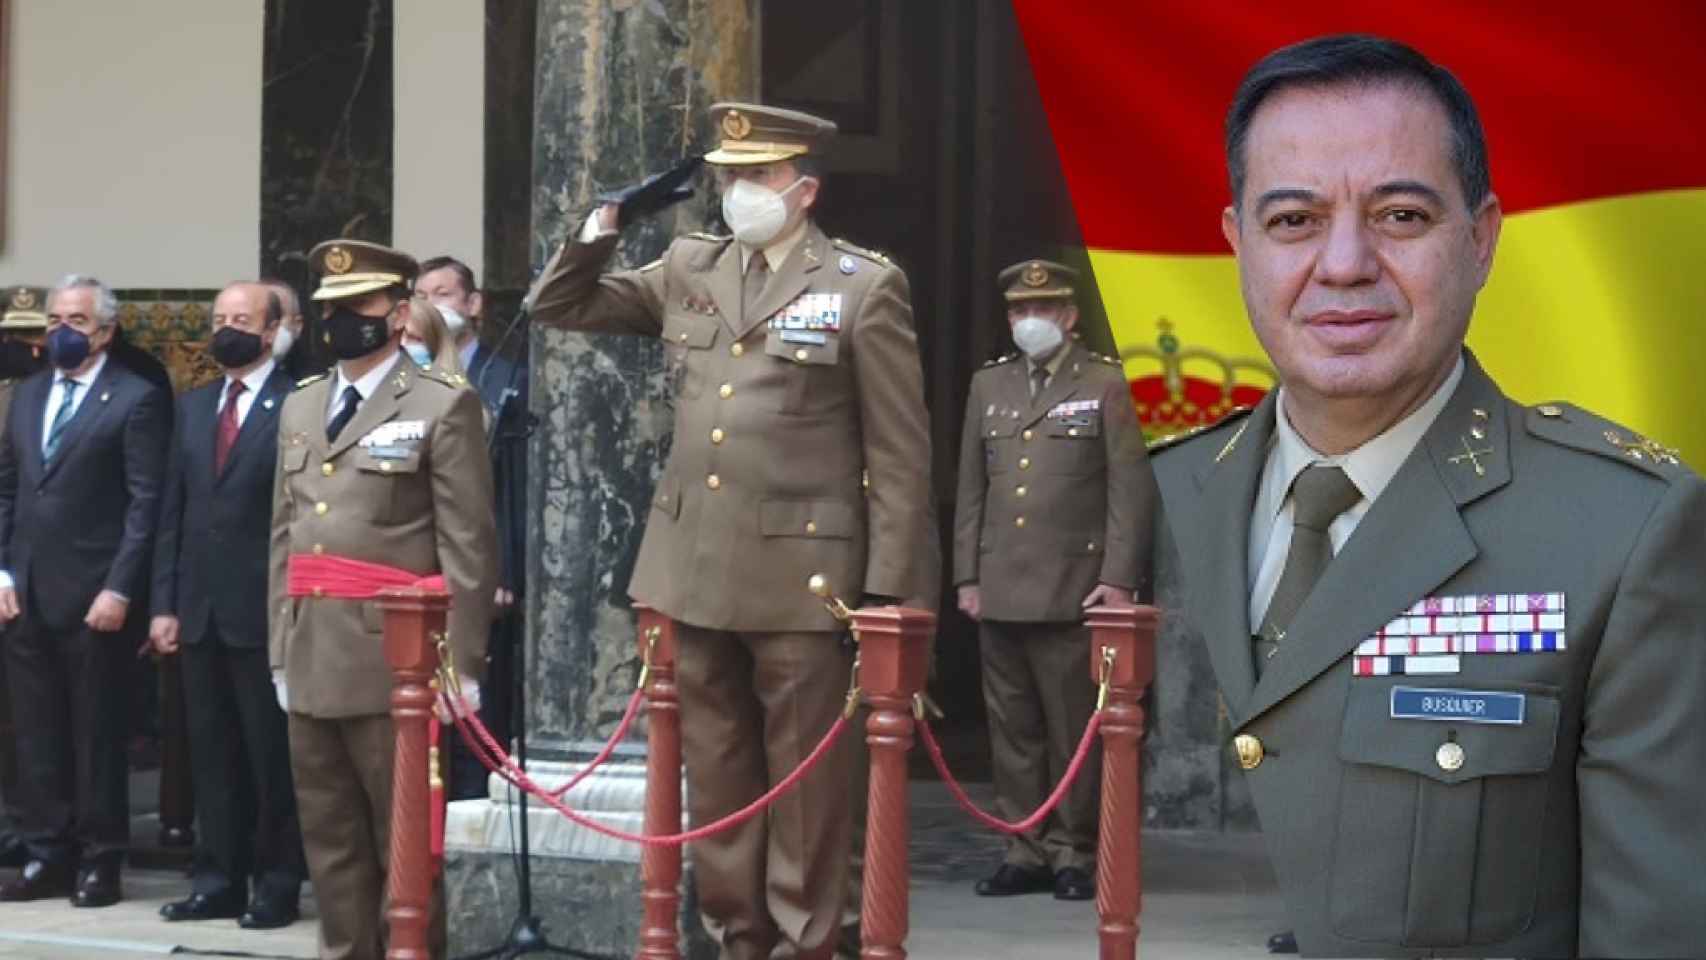 El alicantino Busquier Sáez, nueva máxima autoridad militar en Cataluña, promete estrechar lazos